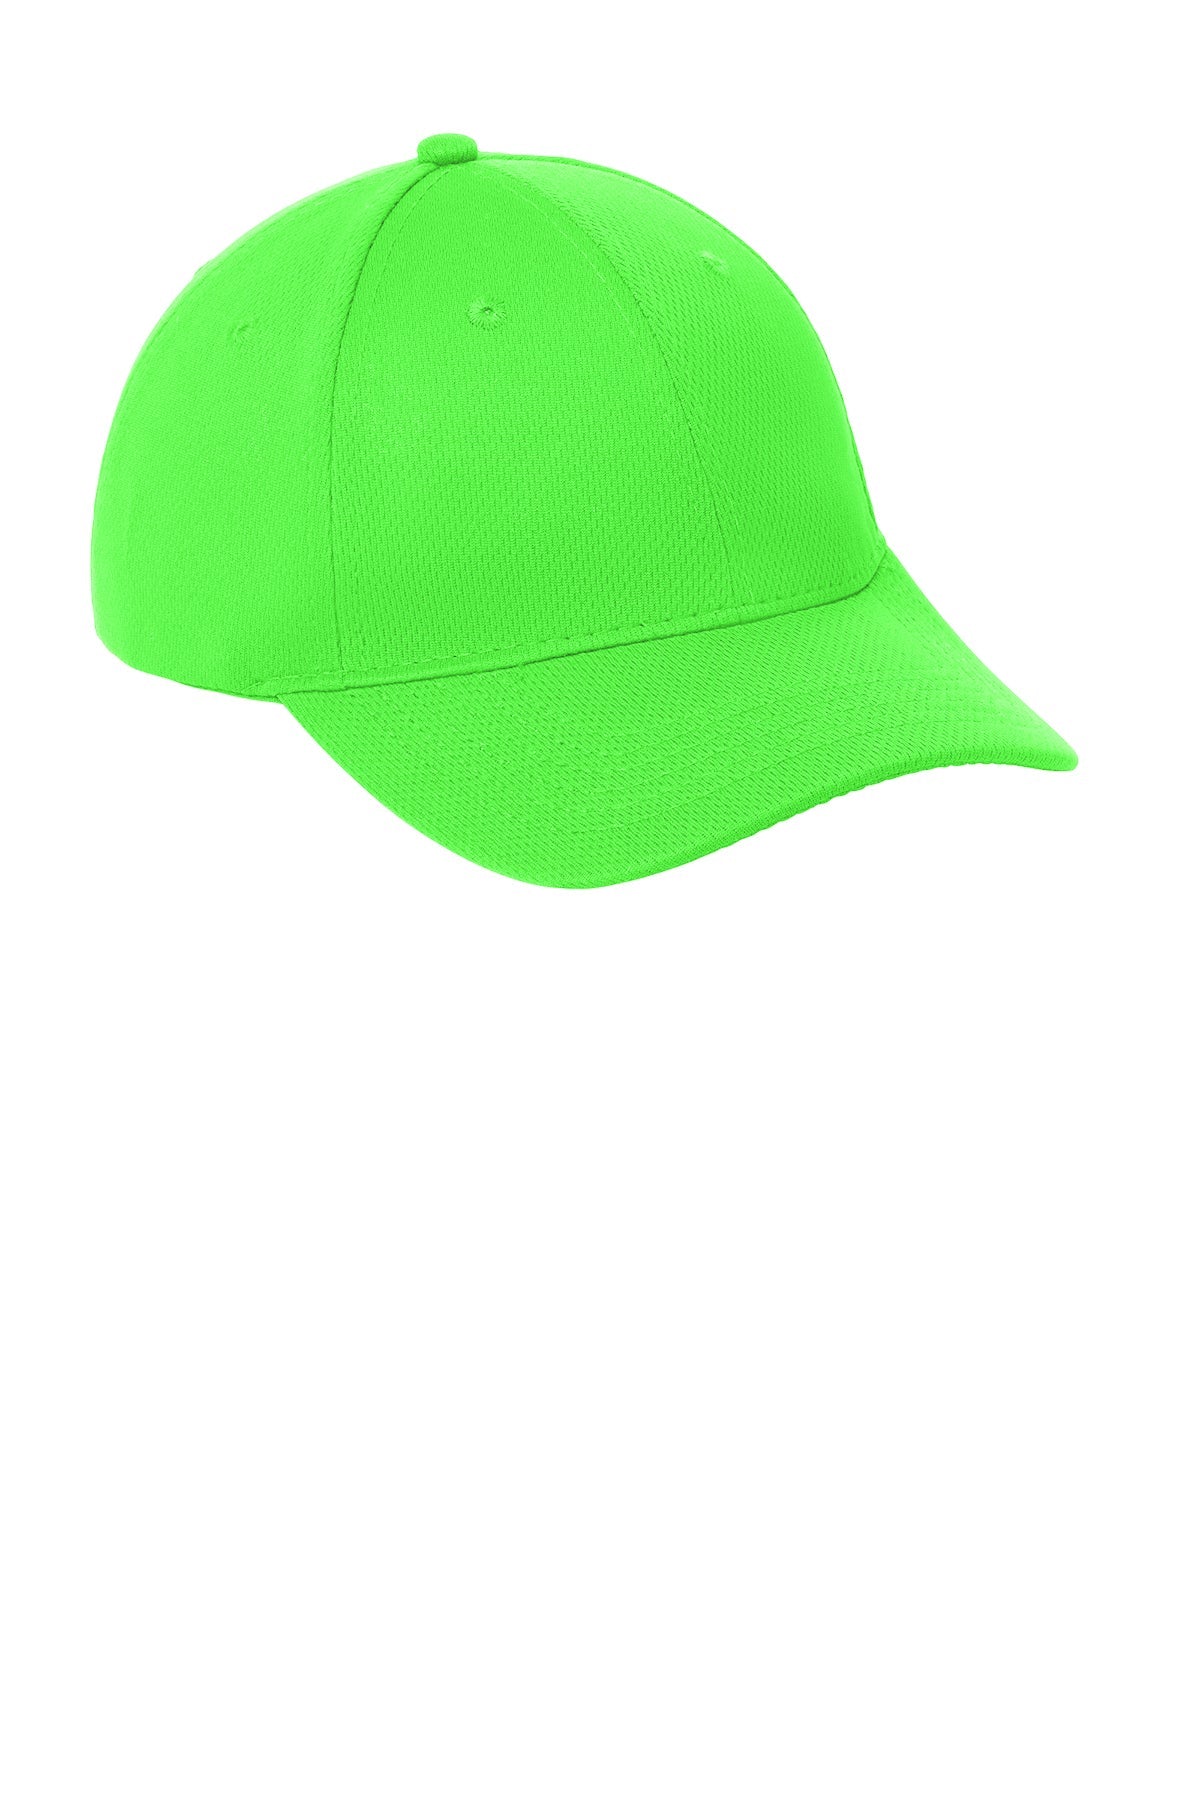 Sport-Tek PosiCharge RacerMesh Custom Caps, Neon Green